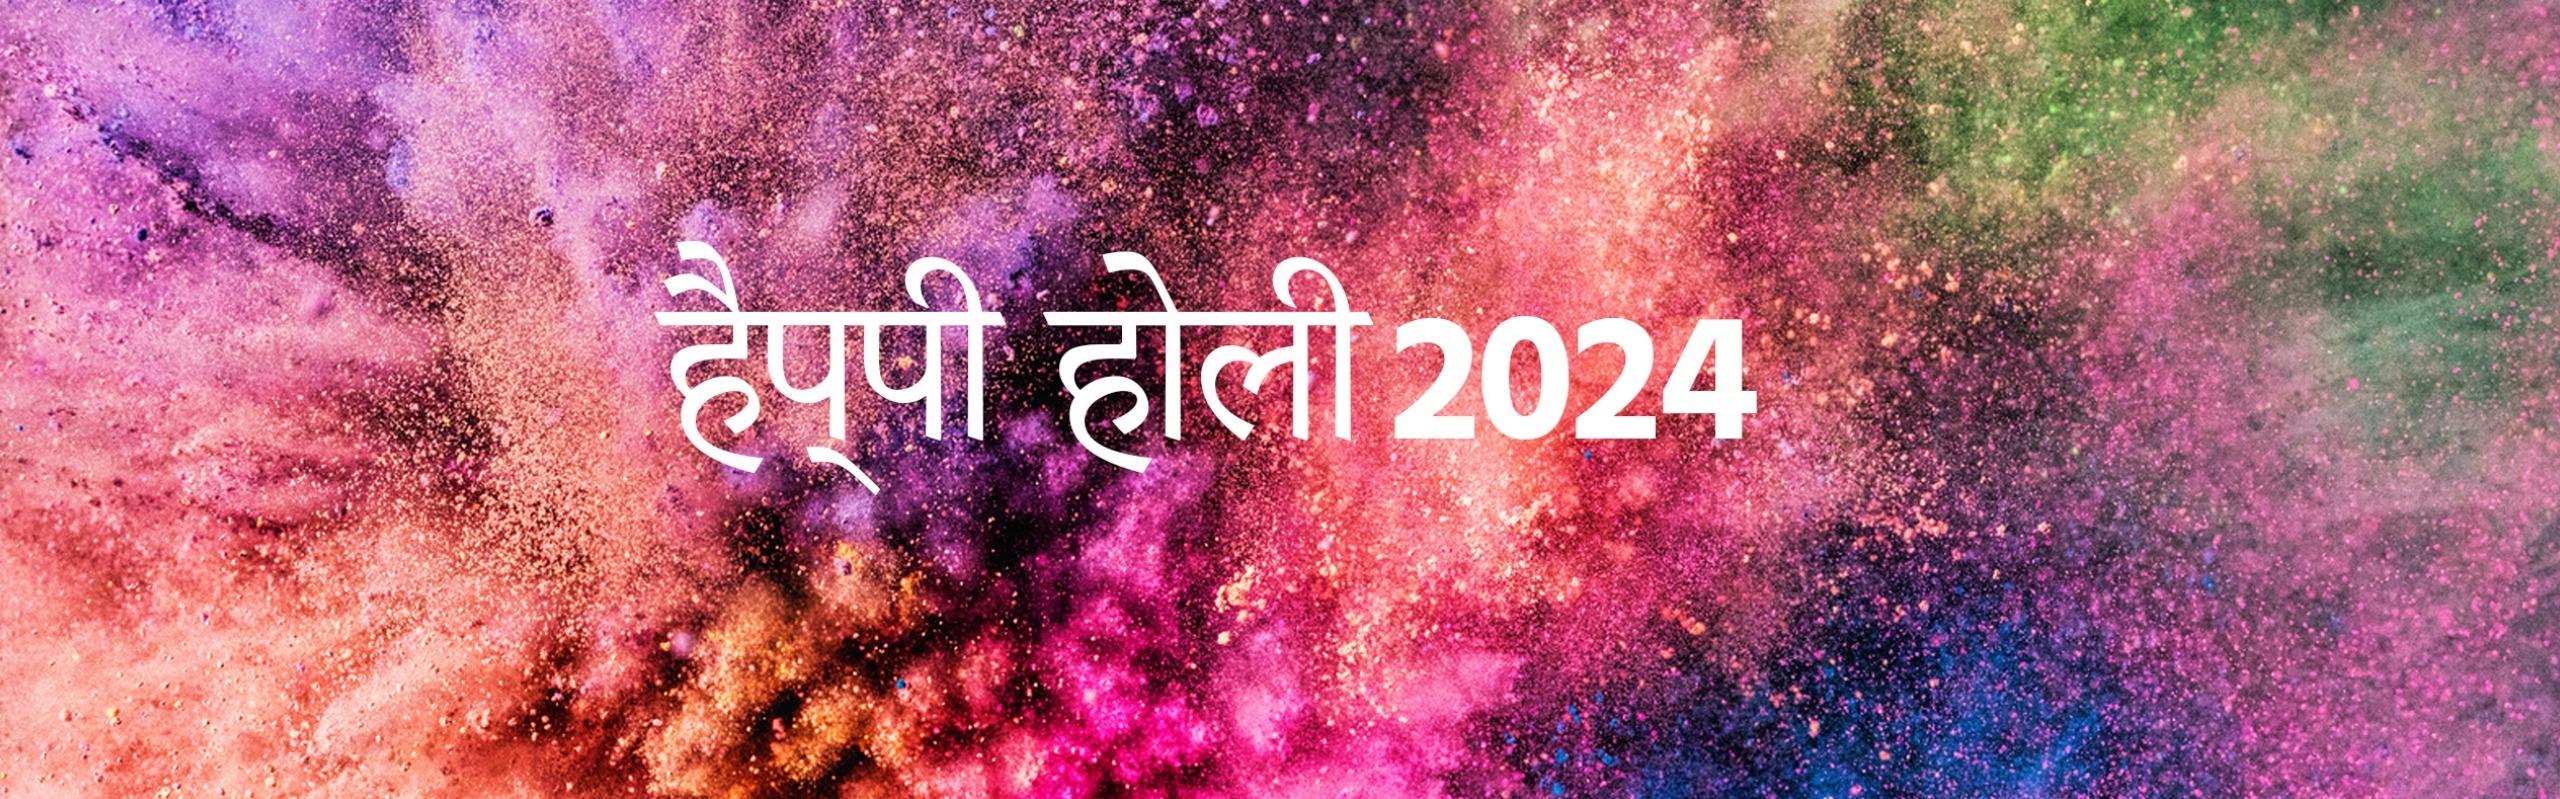 Happy Holi Wish 2024 in Hindi होली की शुभकामनाएं हिंदी में